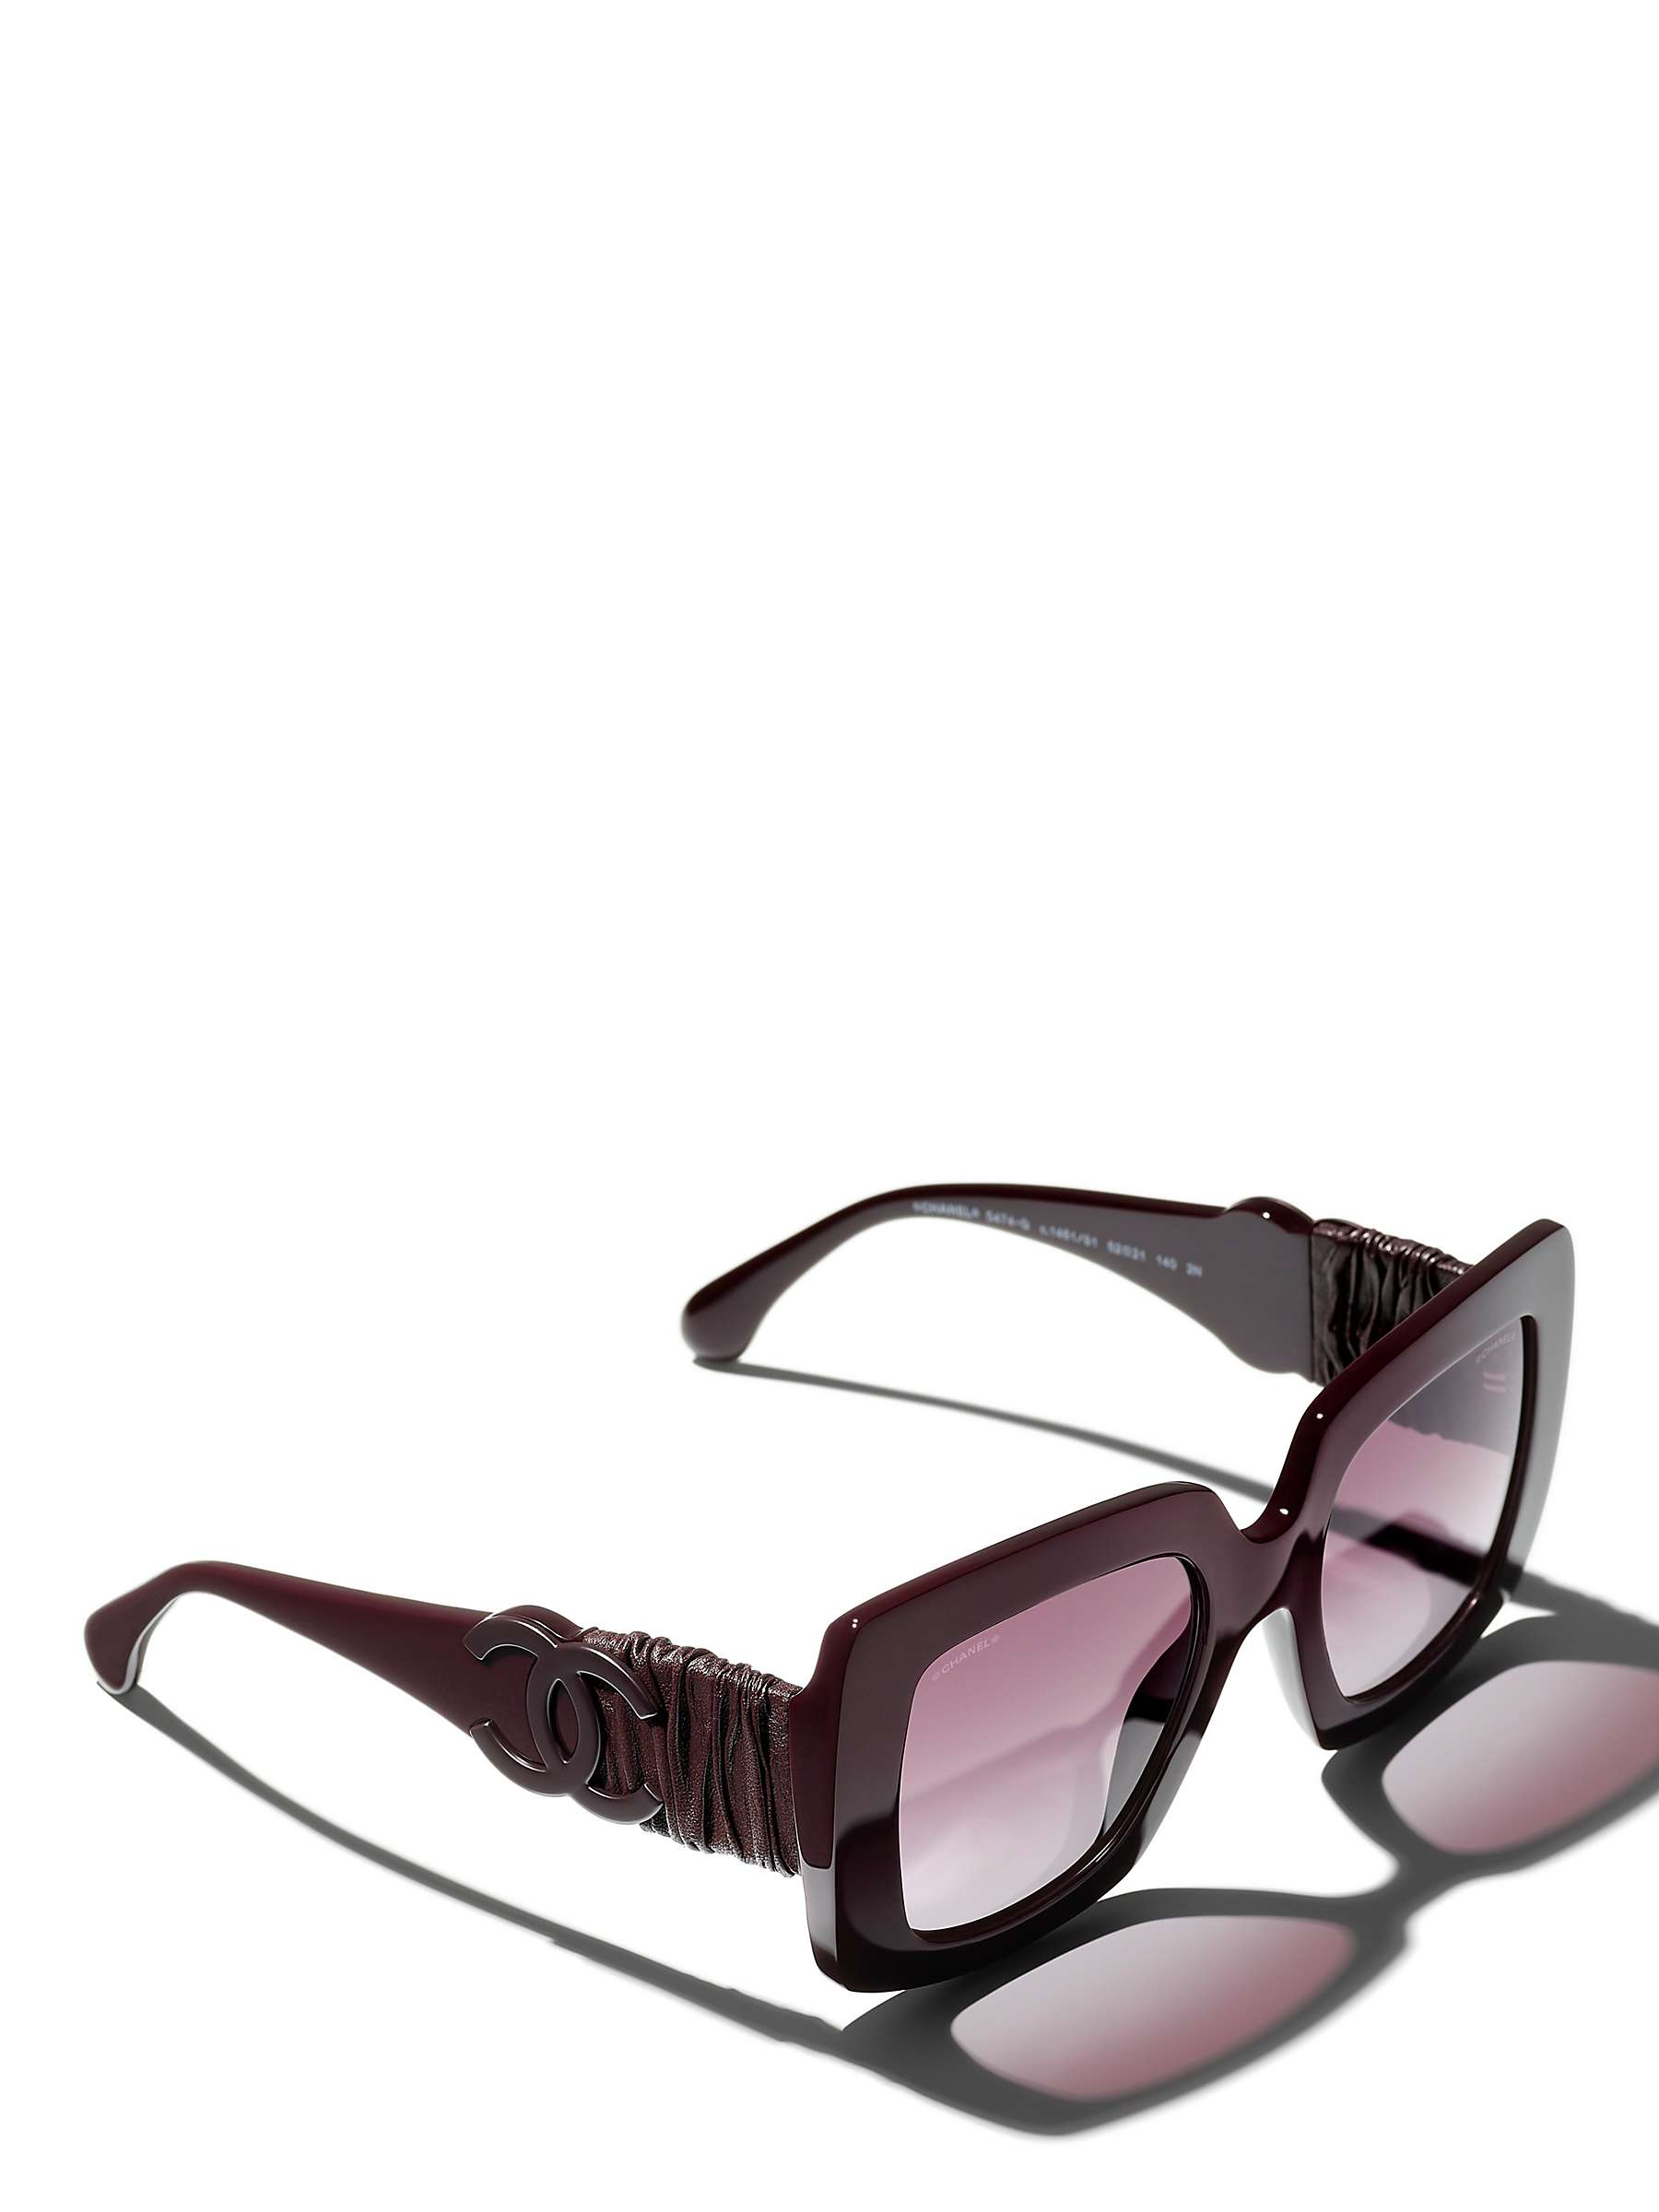 Buy CHANEL Rectangular Sunglasses CH5474Q Bordeaux/Violet Gradient Online at johnlewis.com